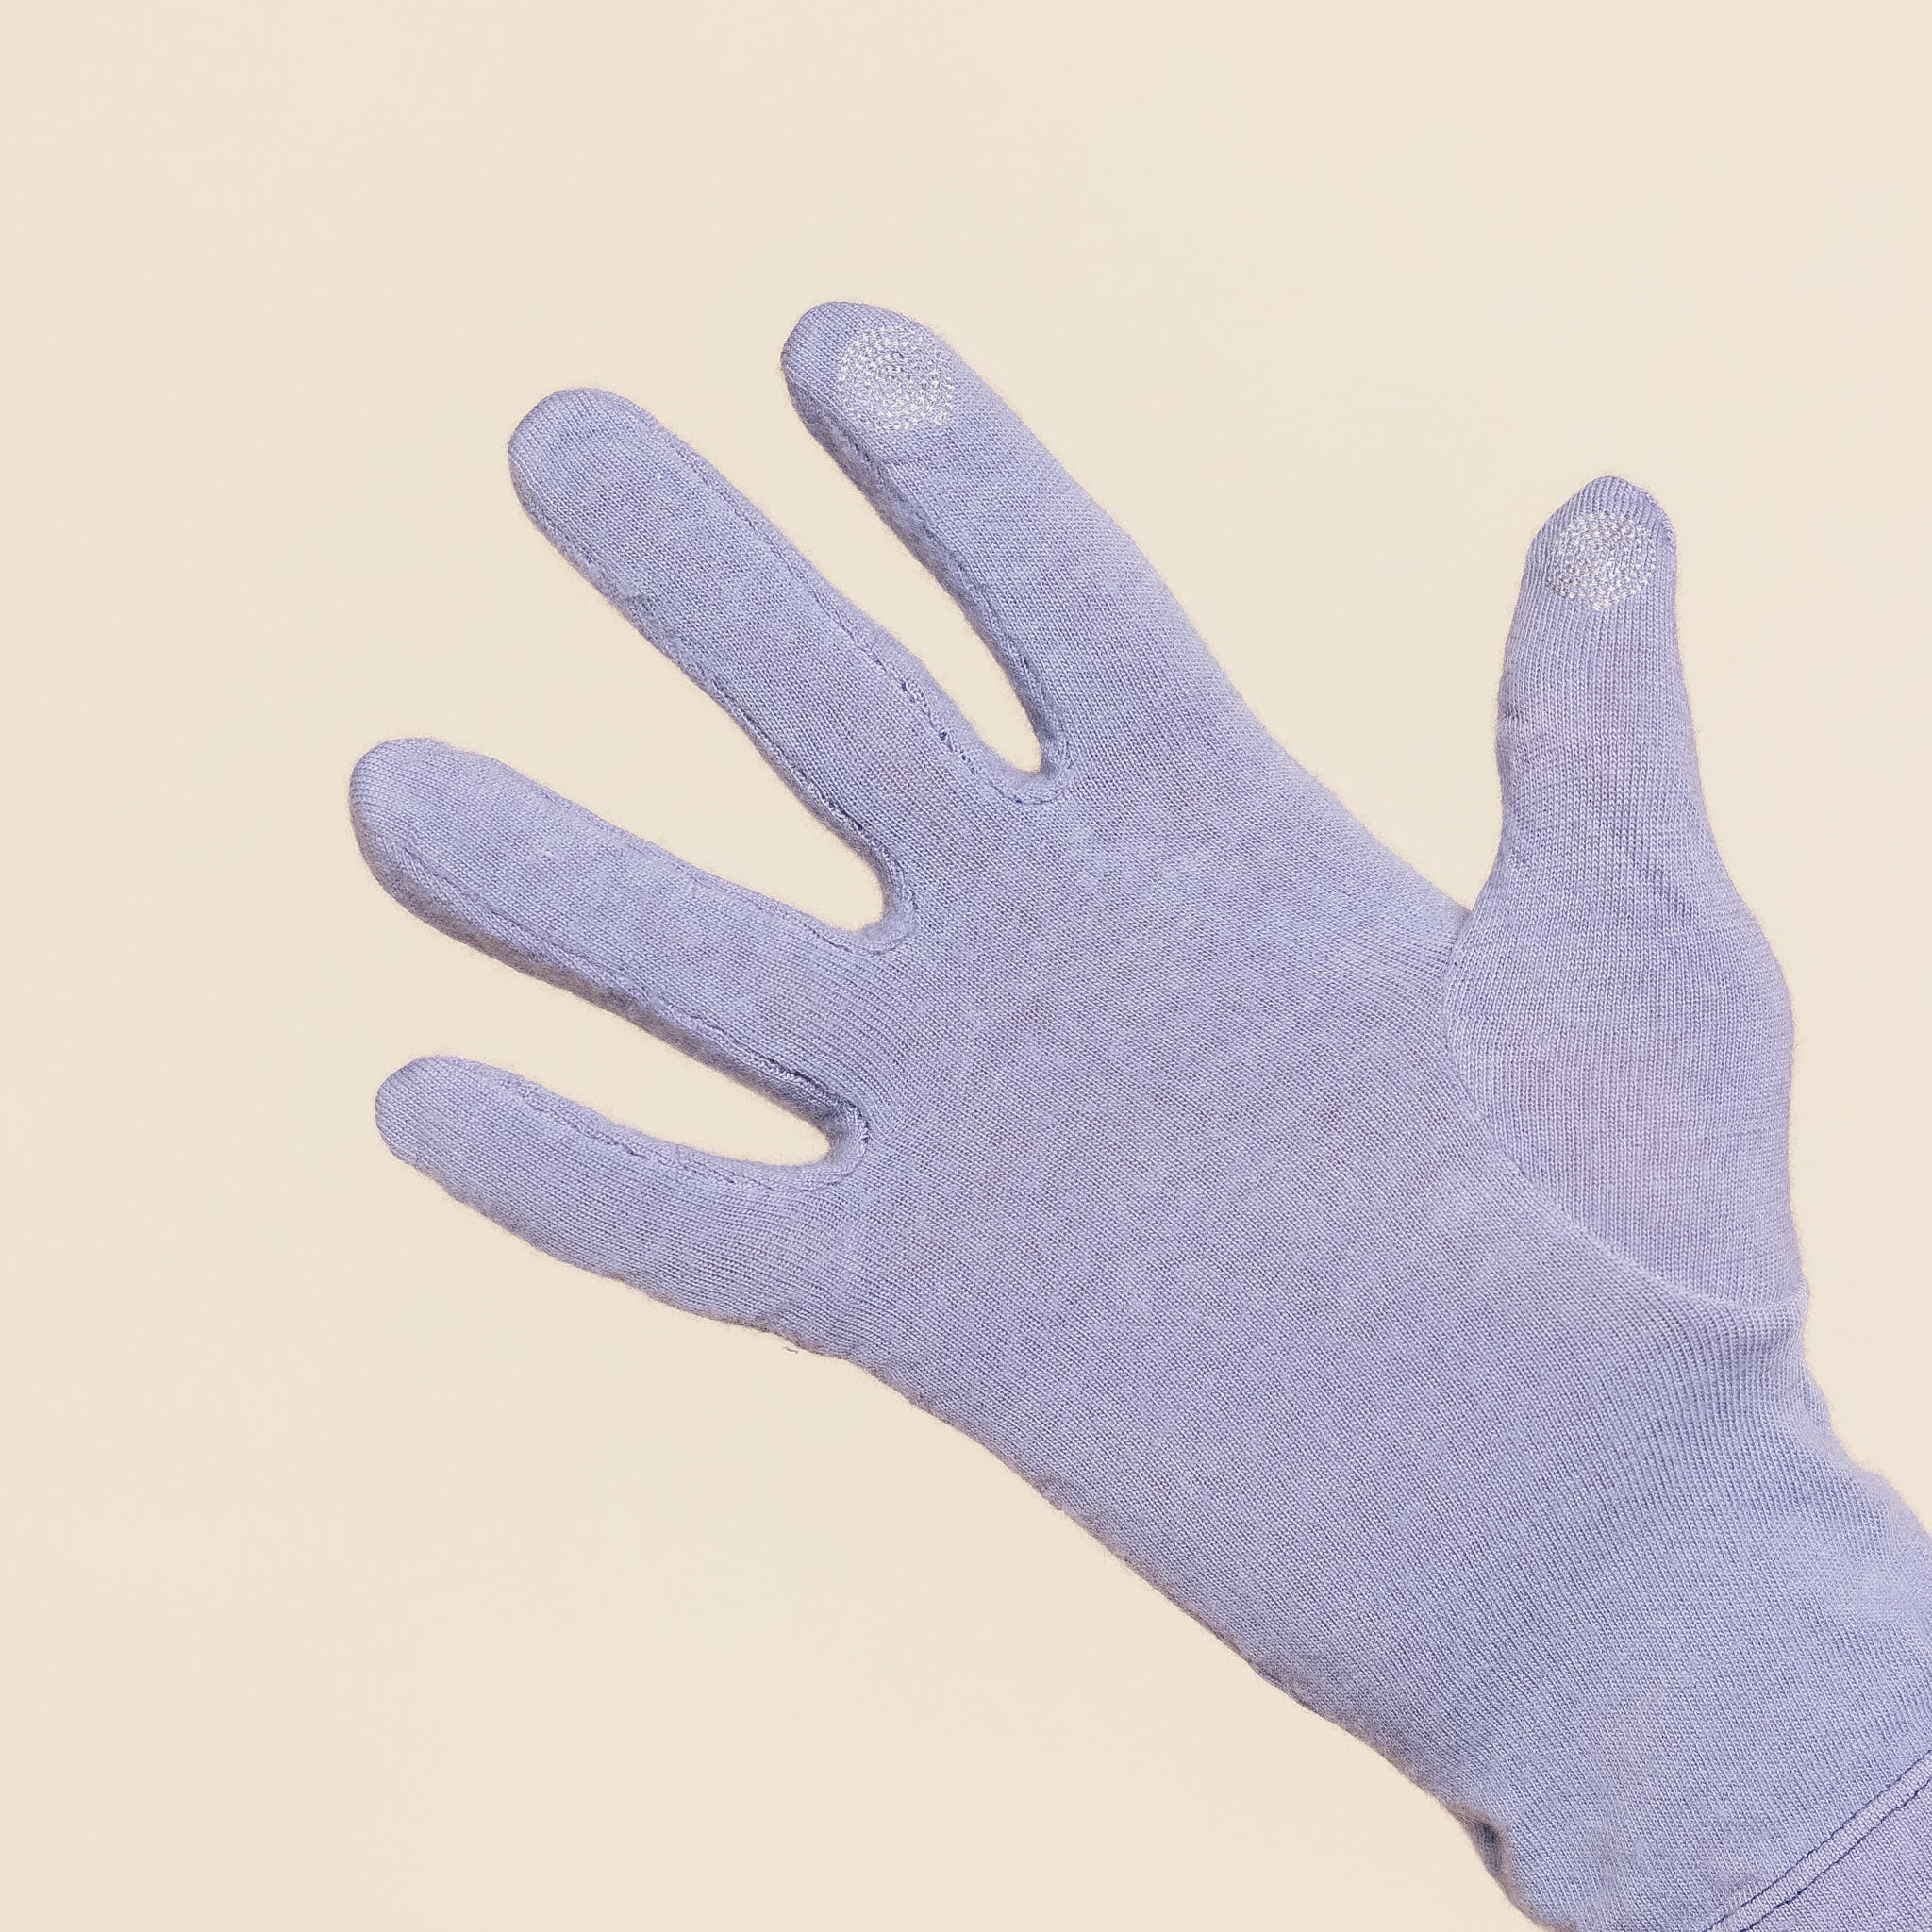 Satisfy Running - Cloud Merino Liner Gloves - Dusk